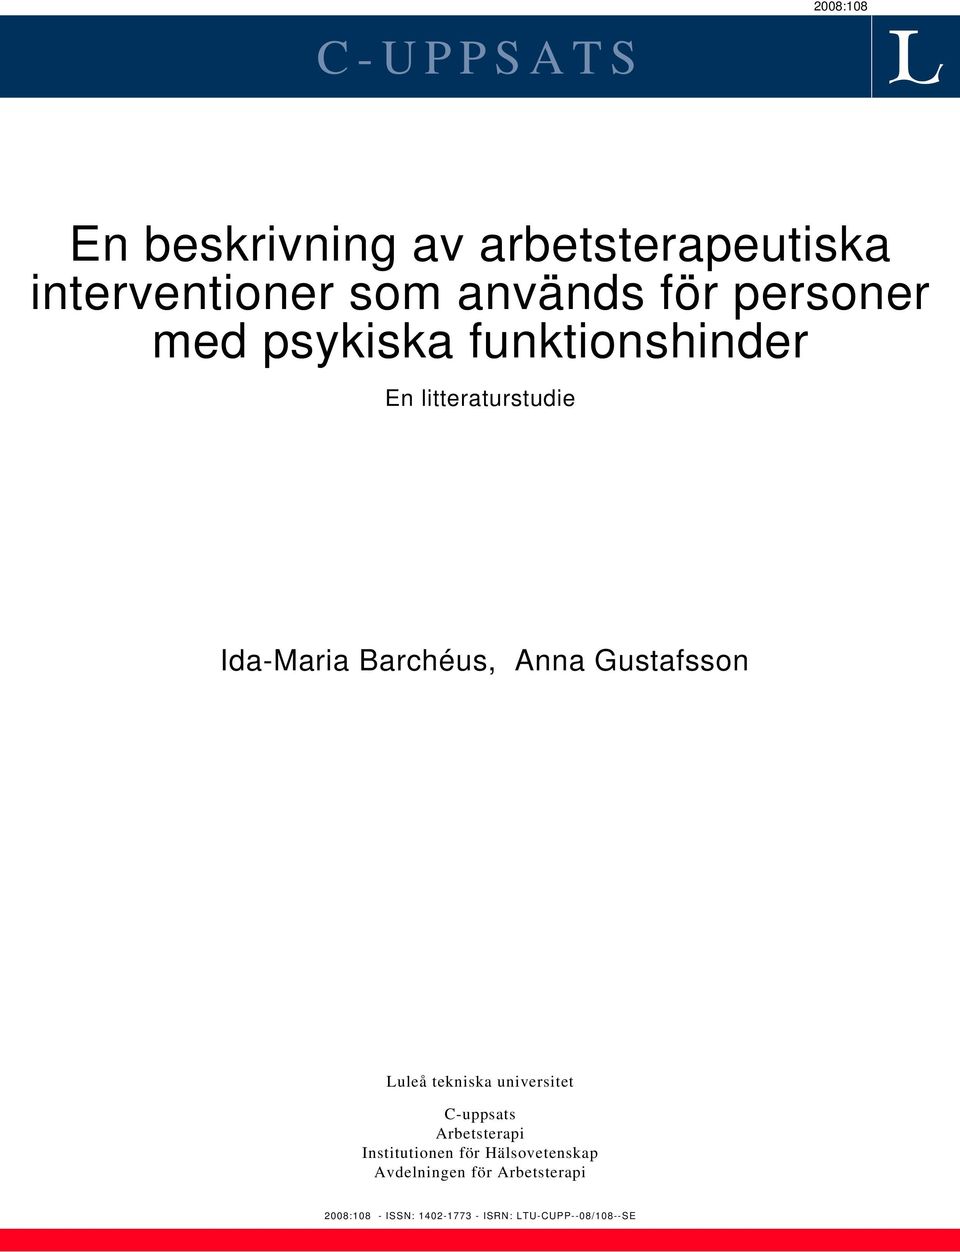 Gustafsson Luleå tekniska universitet C-uppsats Arbetsterapi Institutionen för